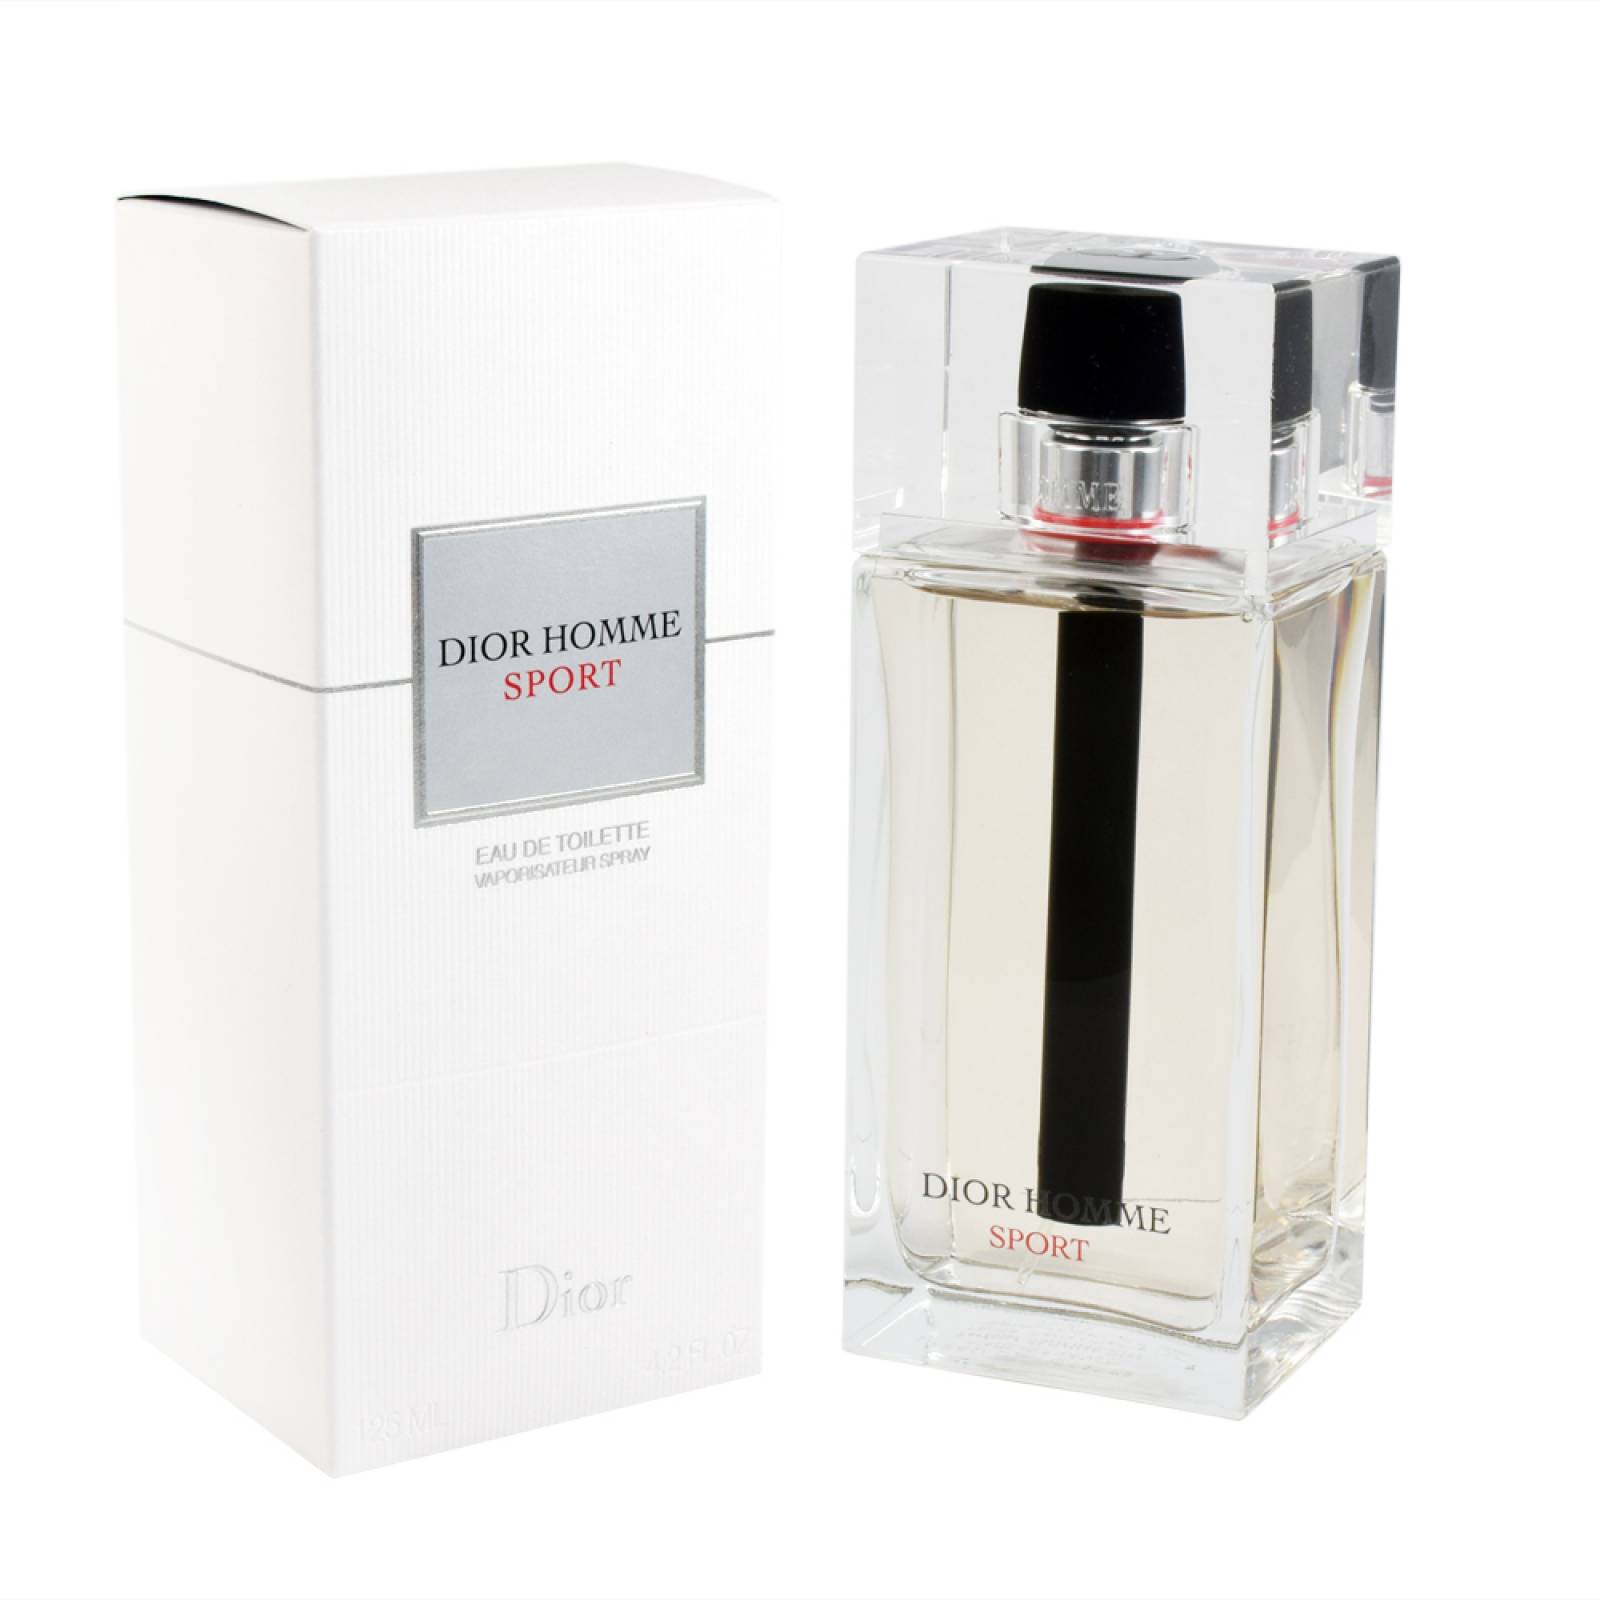 Dior Homme Sport 125 ml Eau de Toilette de Christian Dior Fragancia para Caballero